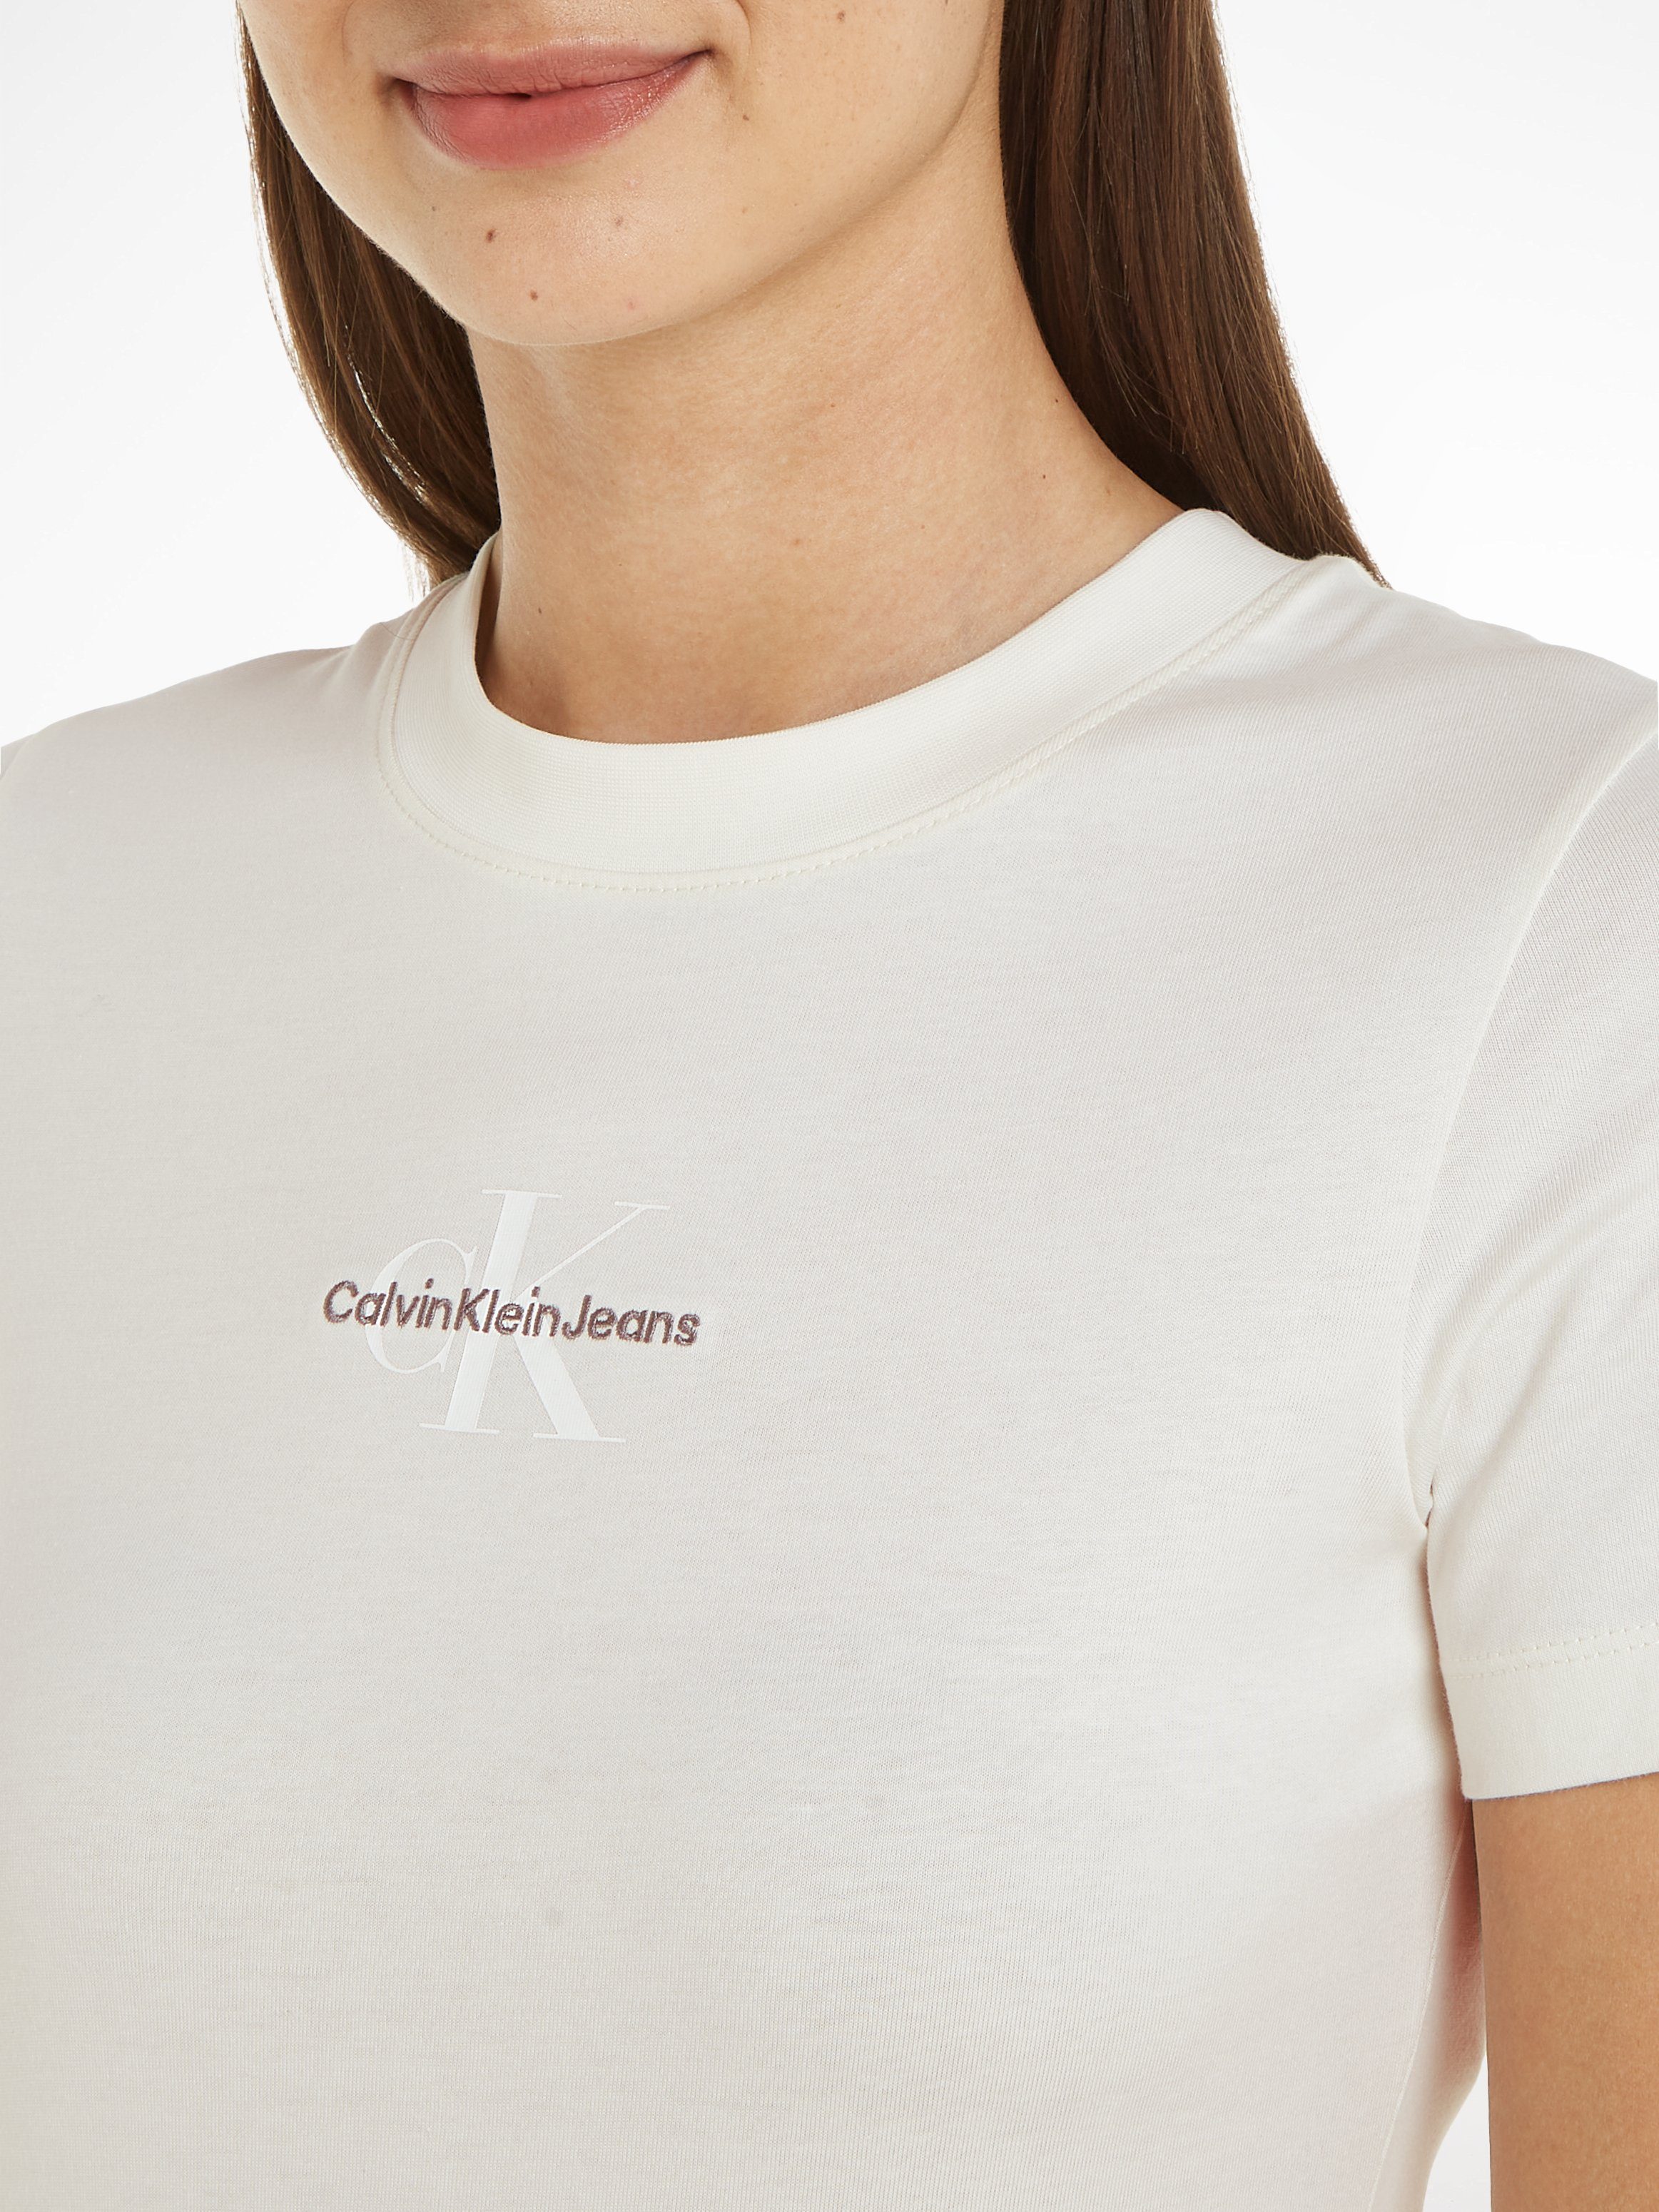 TEE Calvin Klein ecru FIT MONOLOGO SLIM mit Jeans T-Shirt Logodruck